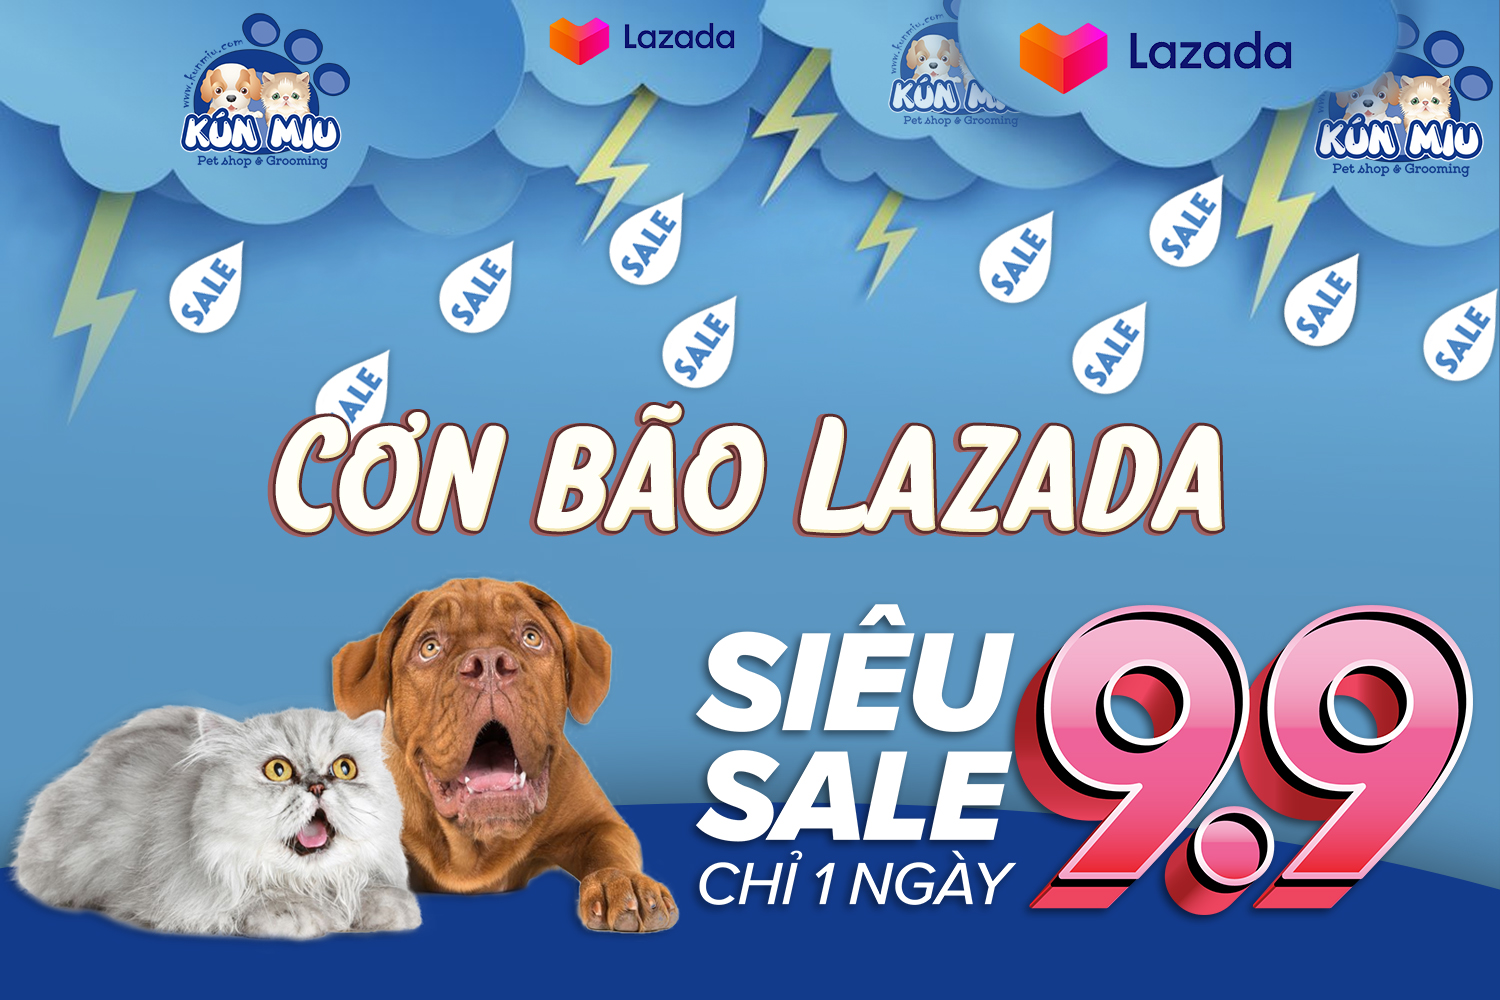 Ngày SIÊU SALE 9.9 với Kún Miu pet shop trên Lazada